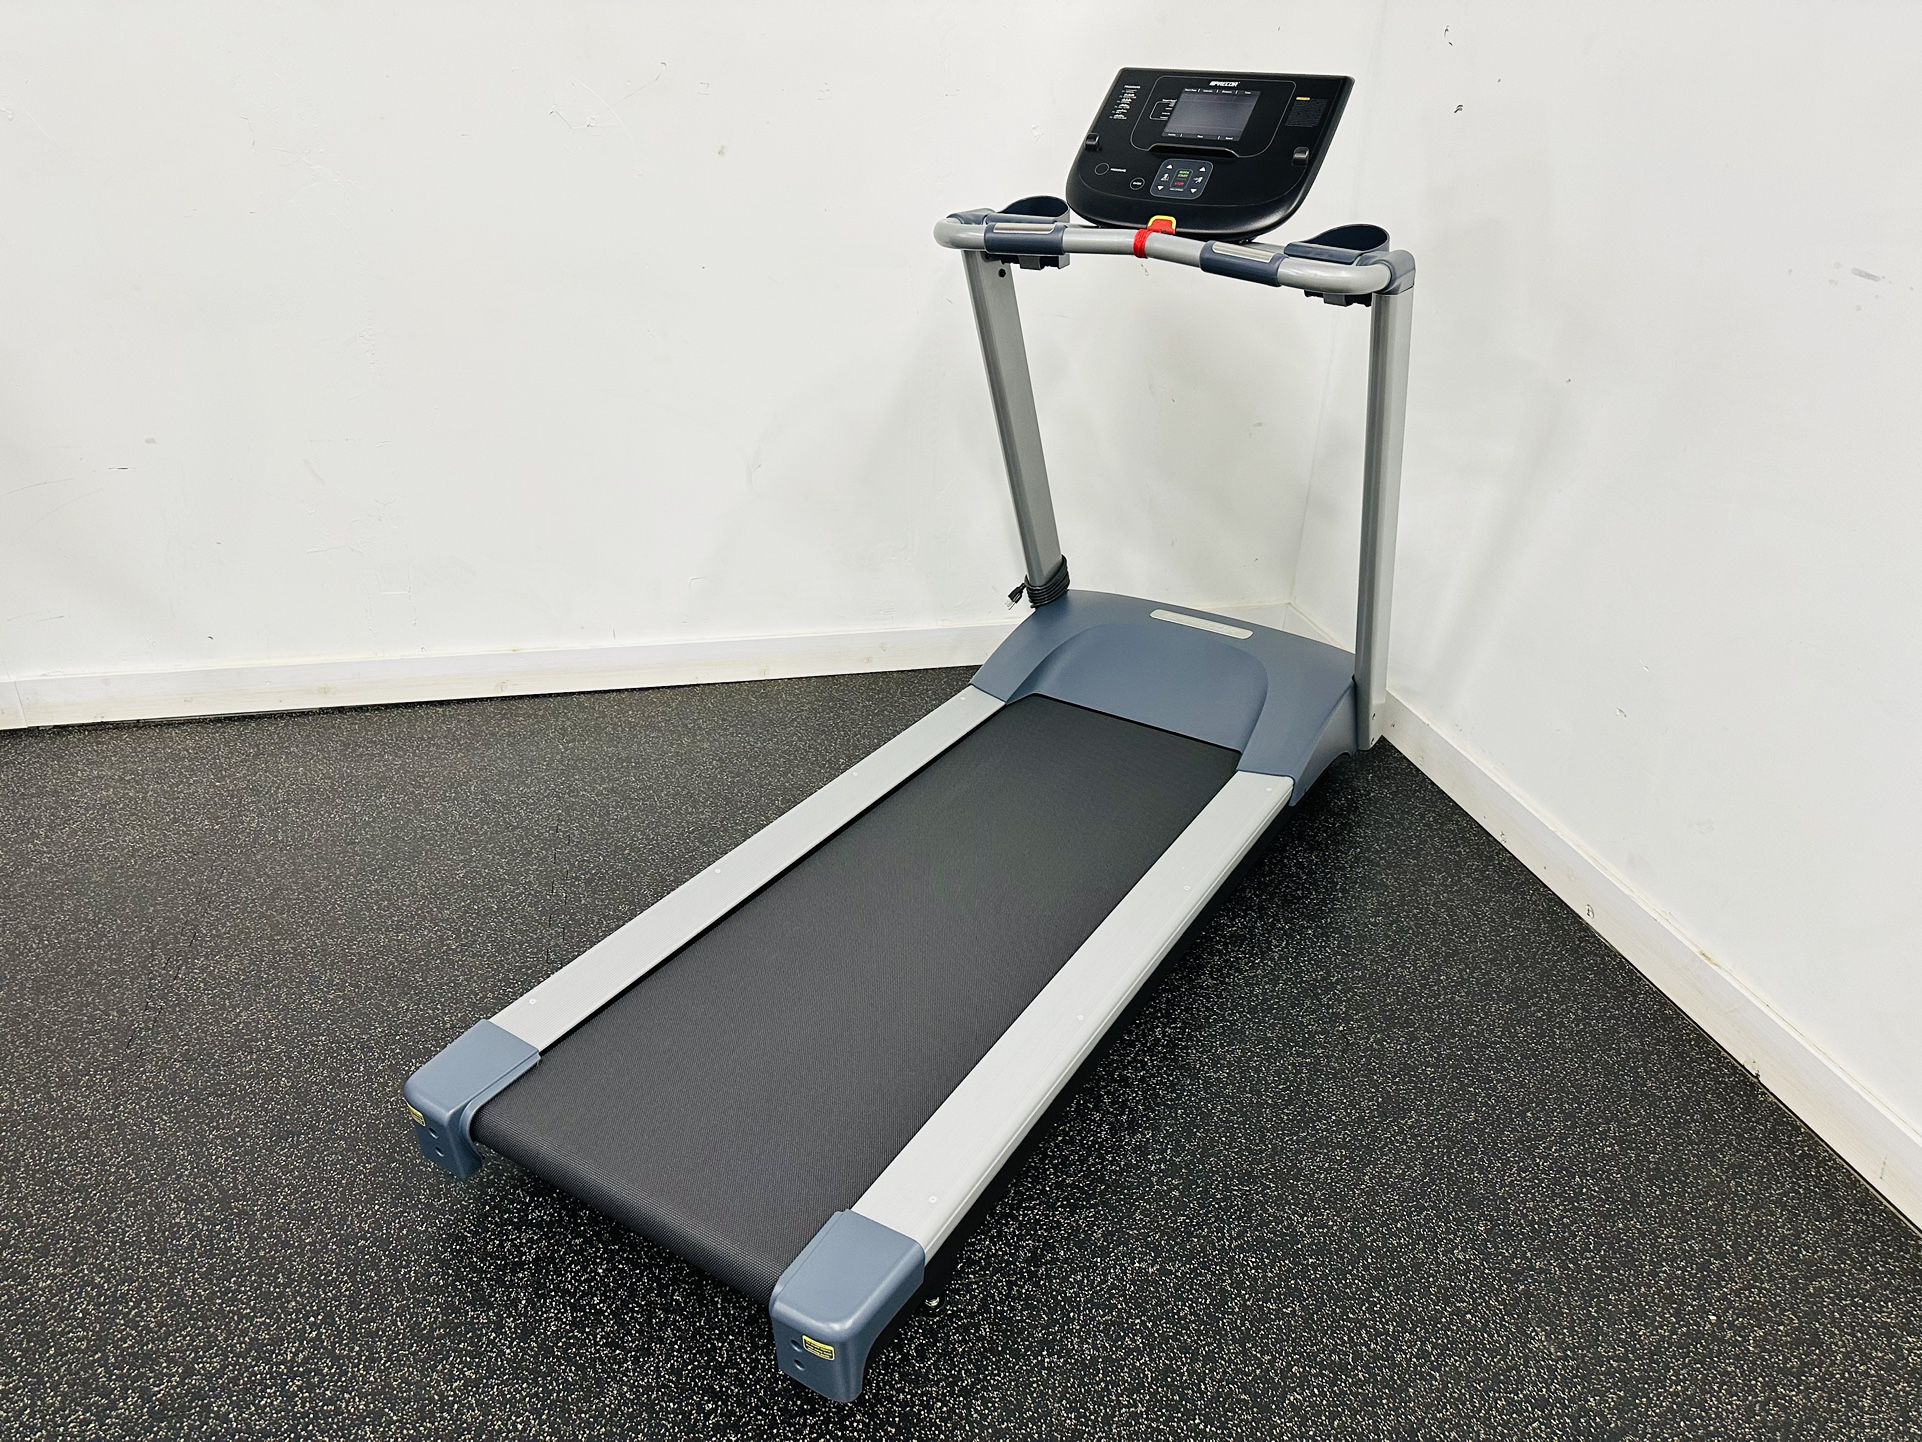 Precor TRM211 Treadmill - Cardio Equipment - Home Gym